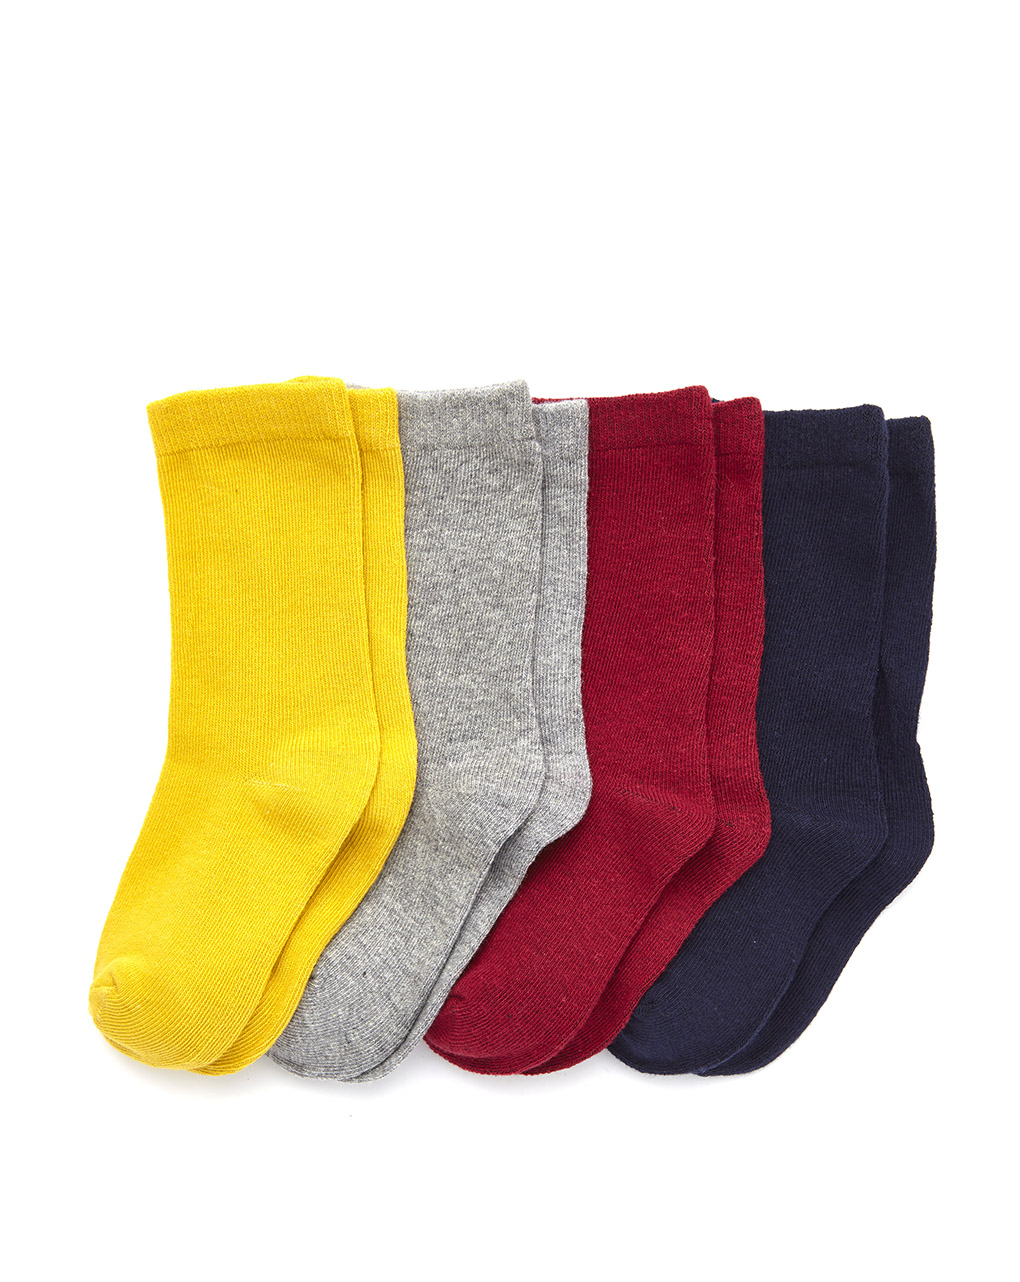 Pack de 4 pares de calcetas para niño - Prénatal